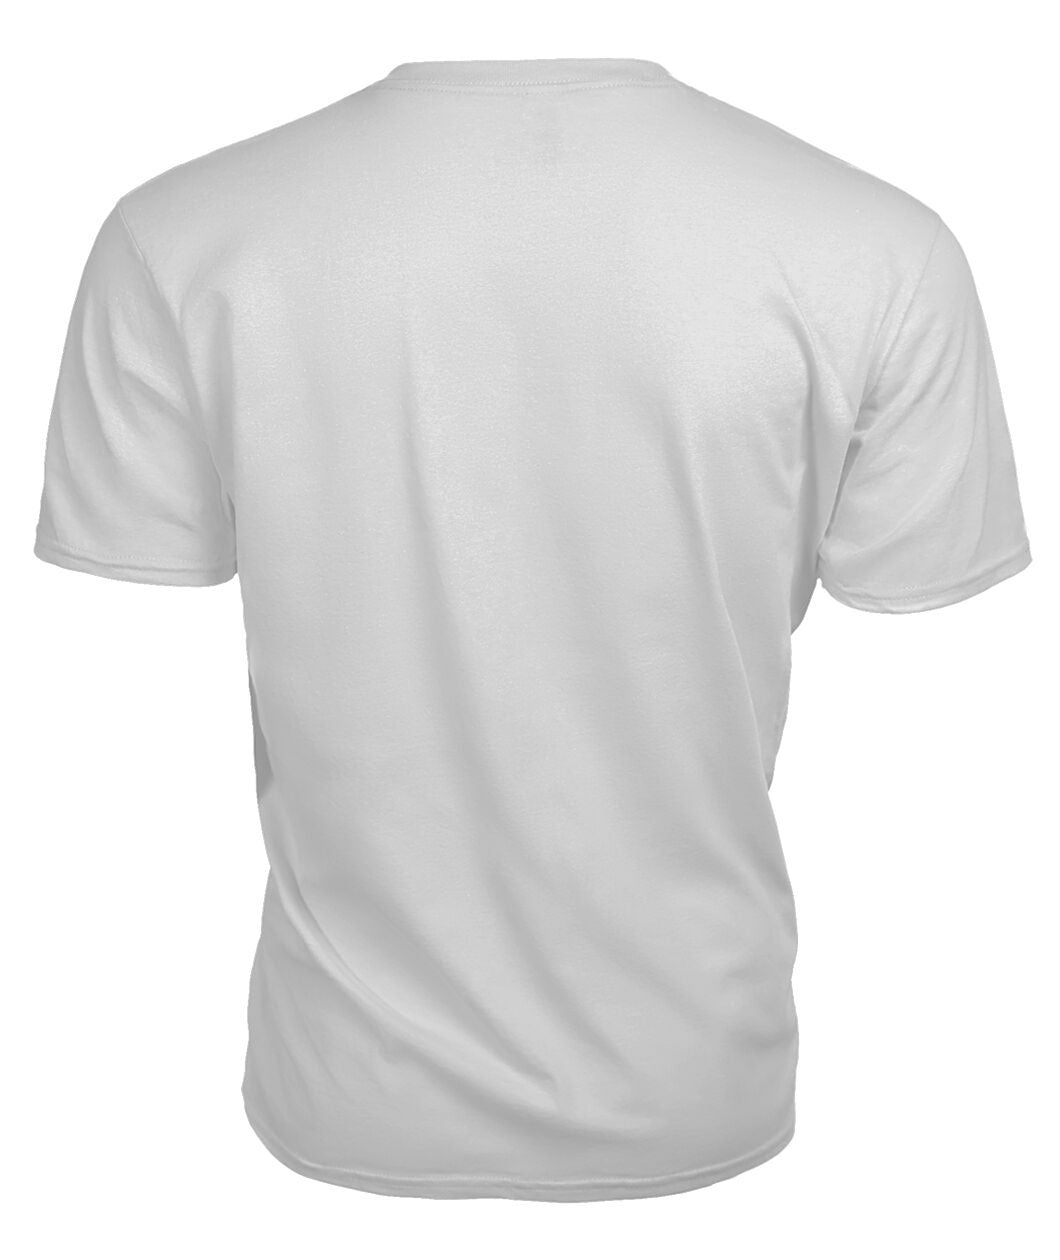 Arbuthnot Modern Tartan Crest 2D T-shirt - Blood Runs Through My Veins Style